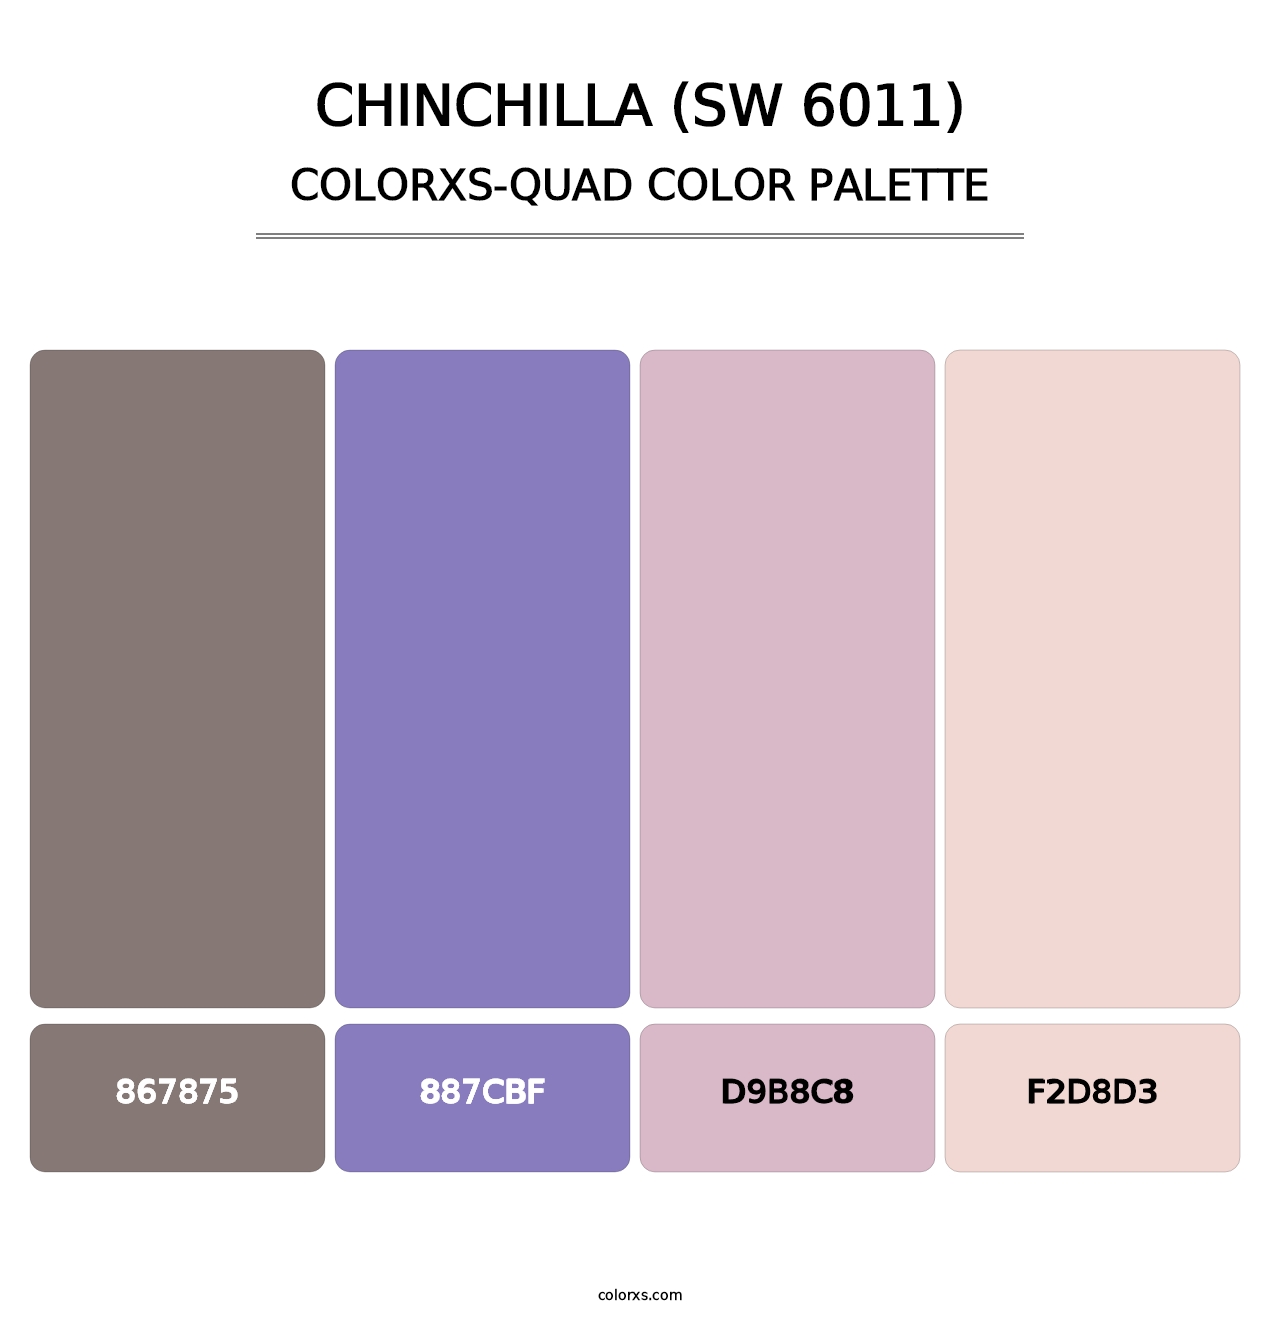 Chinchilla (SW 6011) - Colorxs Quad Palette